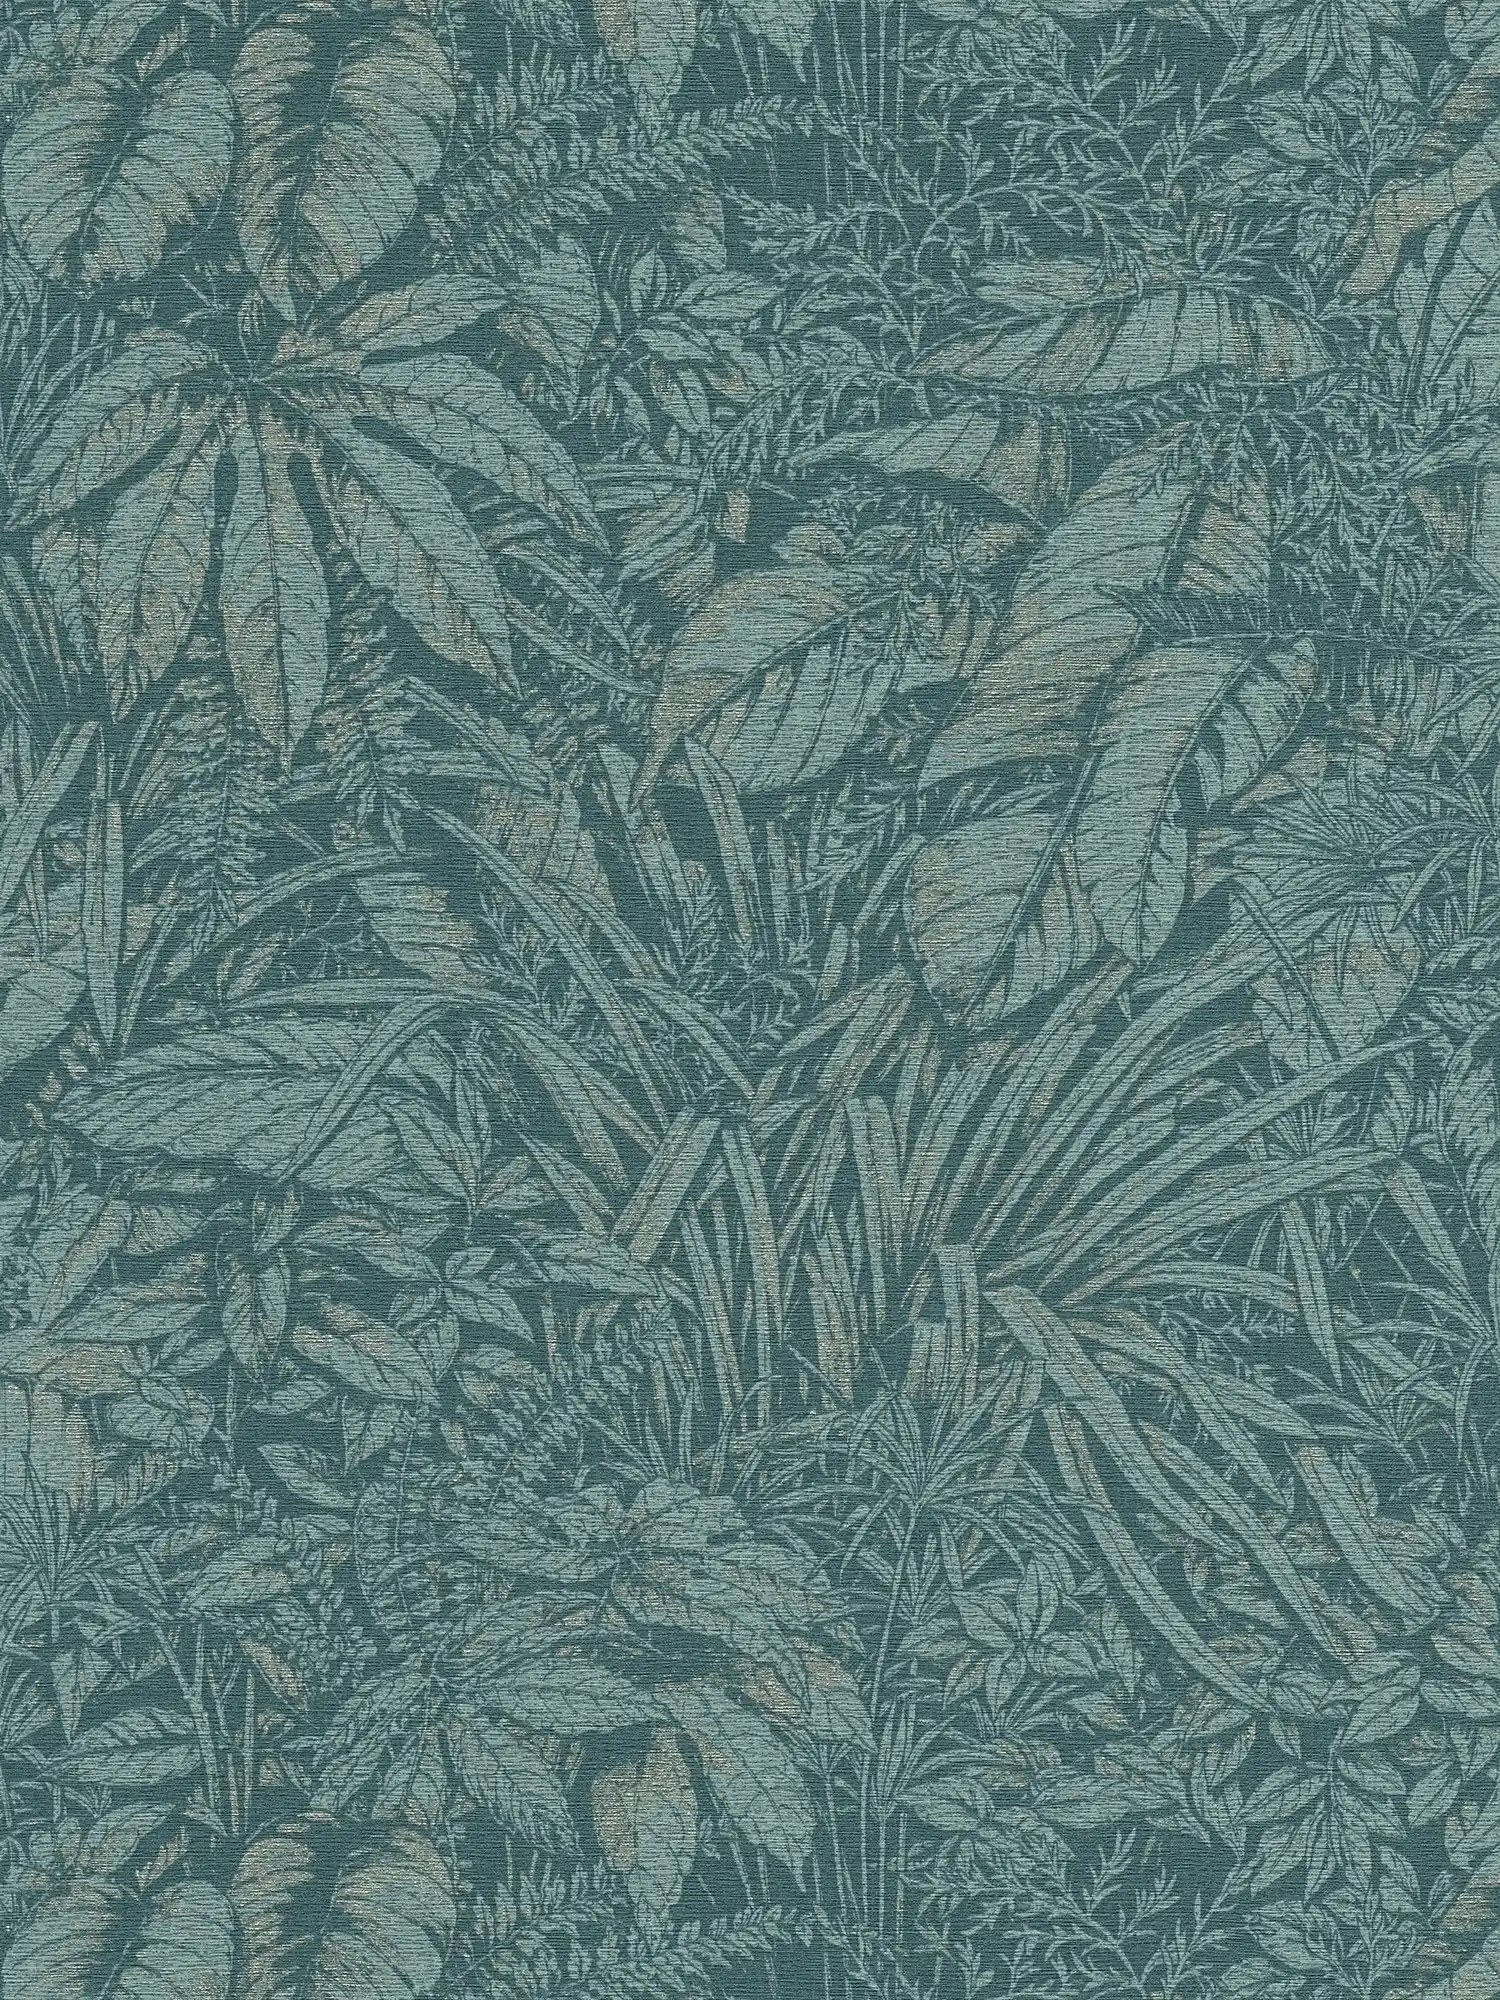 Papel pintado tejido-no tejido floral con motivo de hojas de palmera - azul, petróleo, plata
